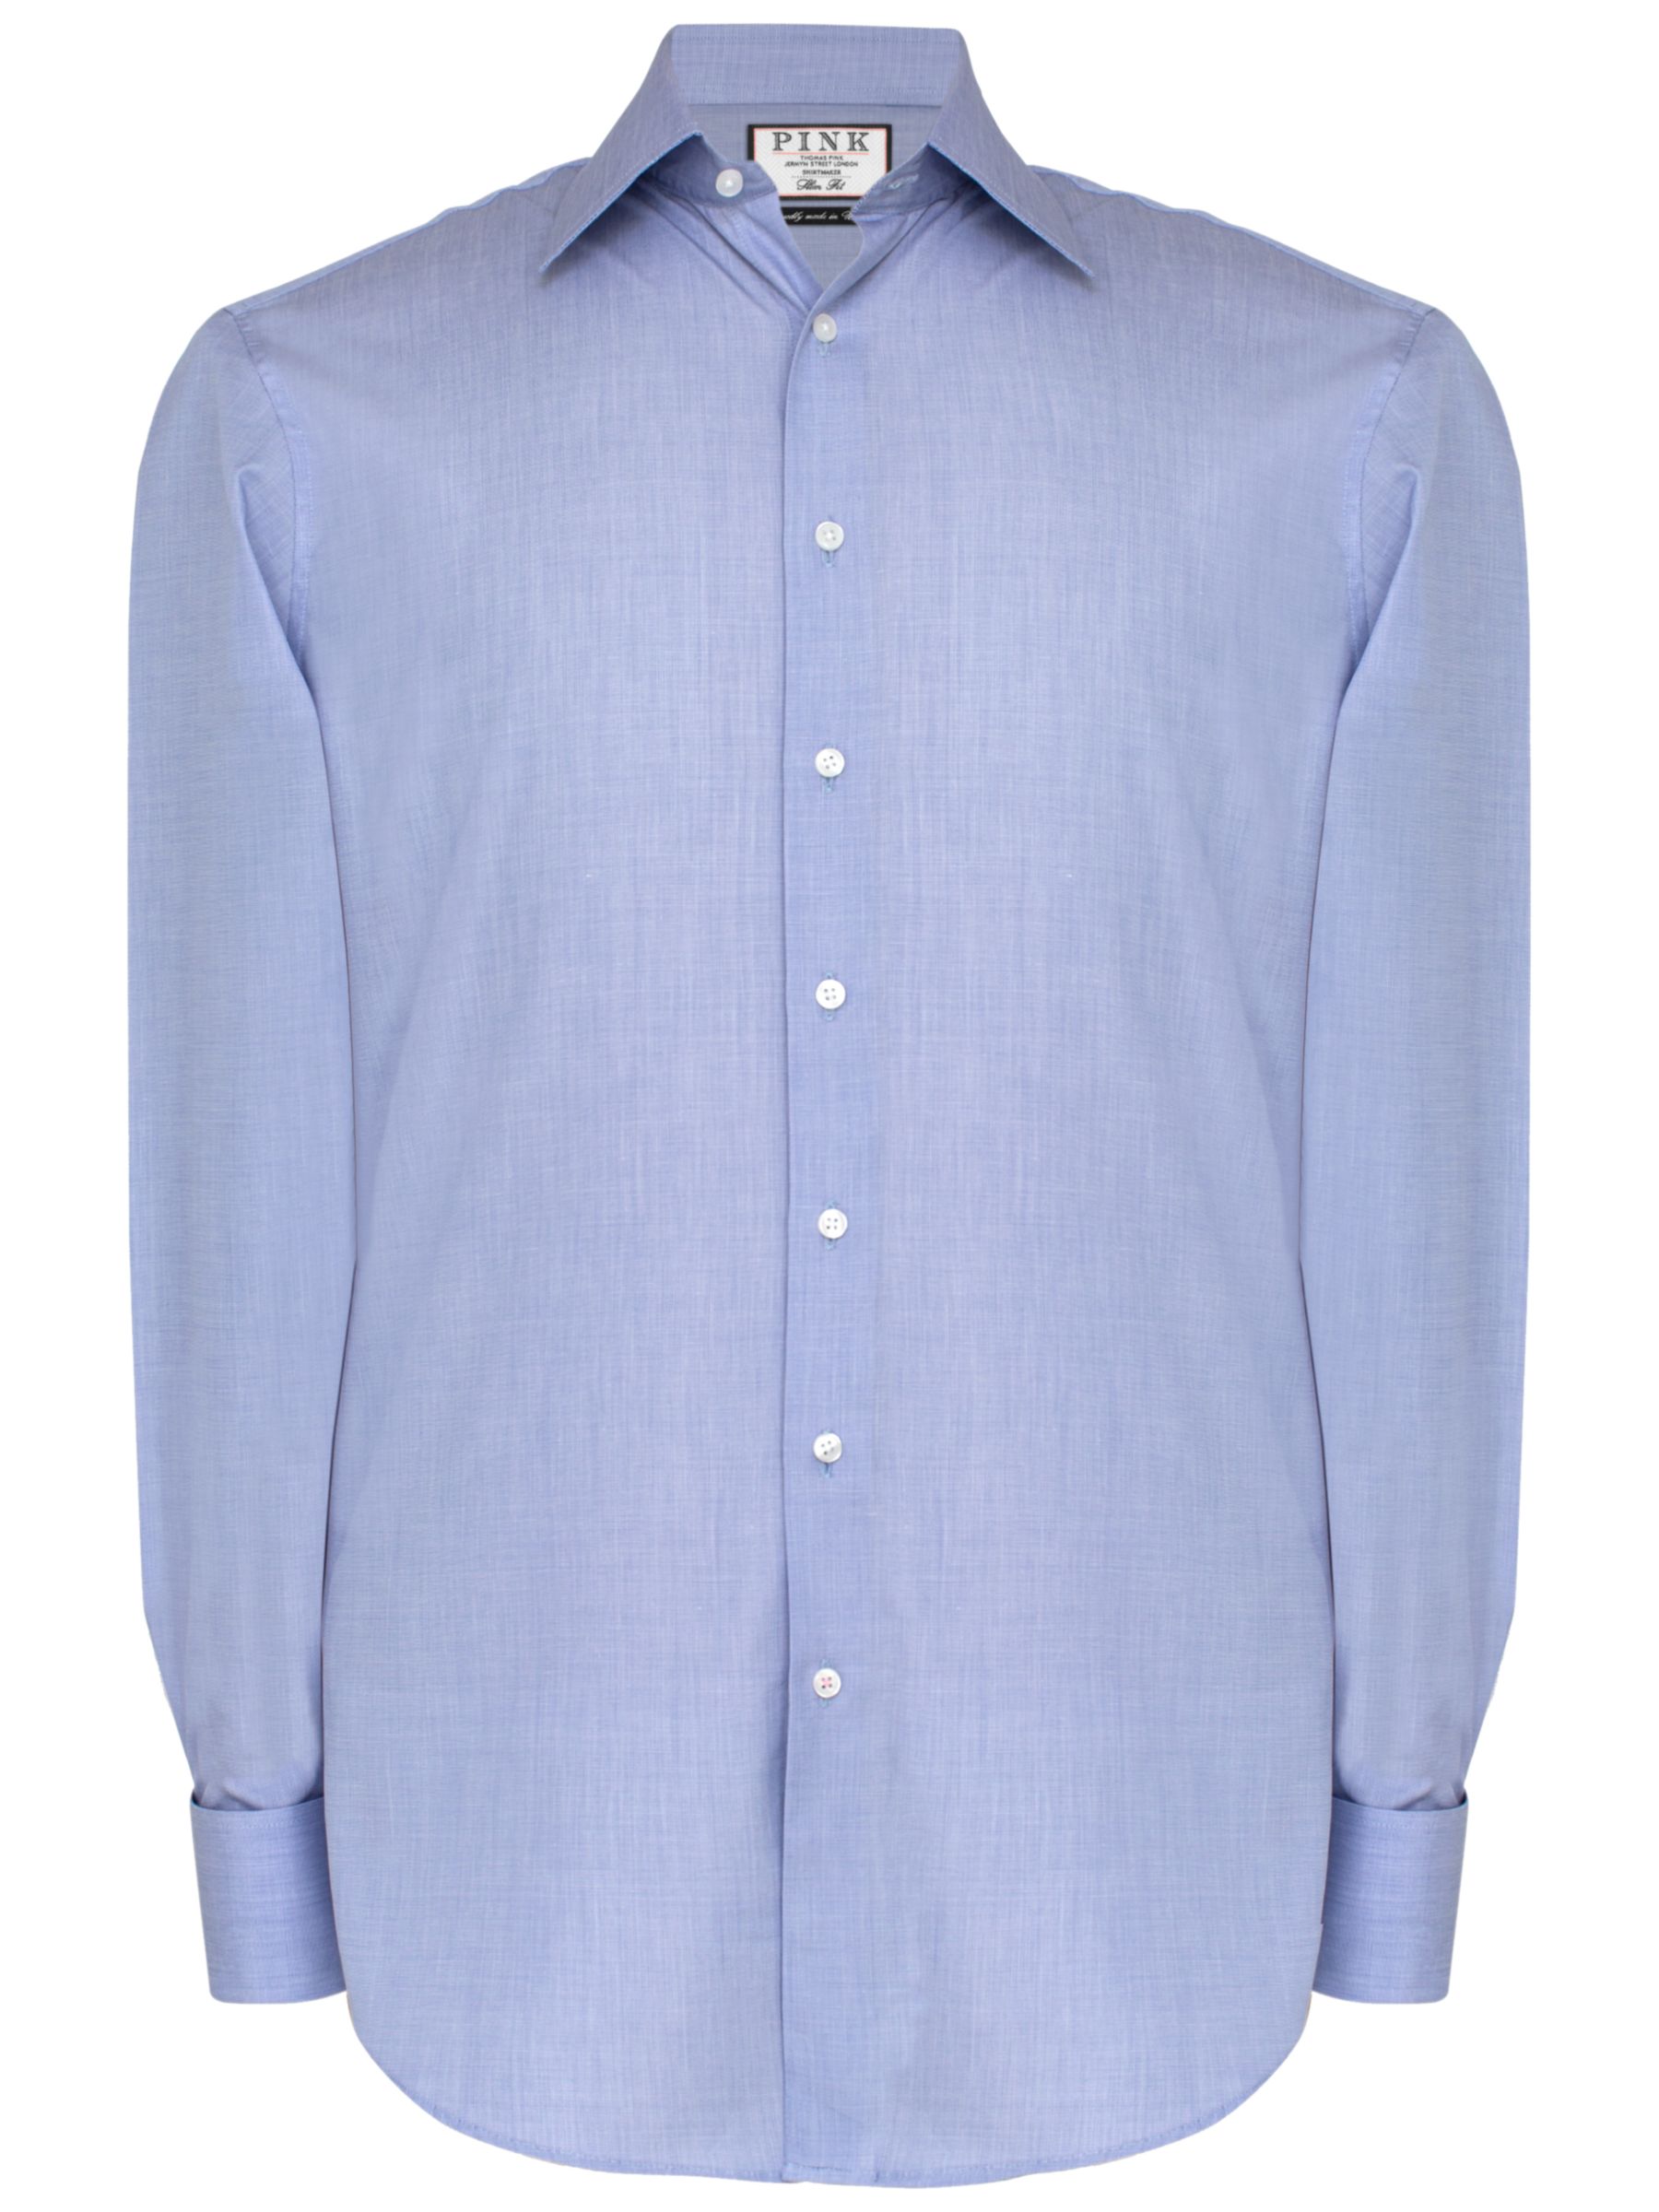 Thomas Pink Oscar Slim Fit Double Cuff Shirt, Blue, 14